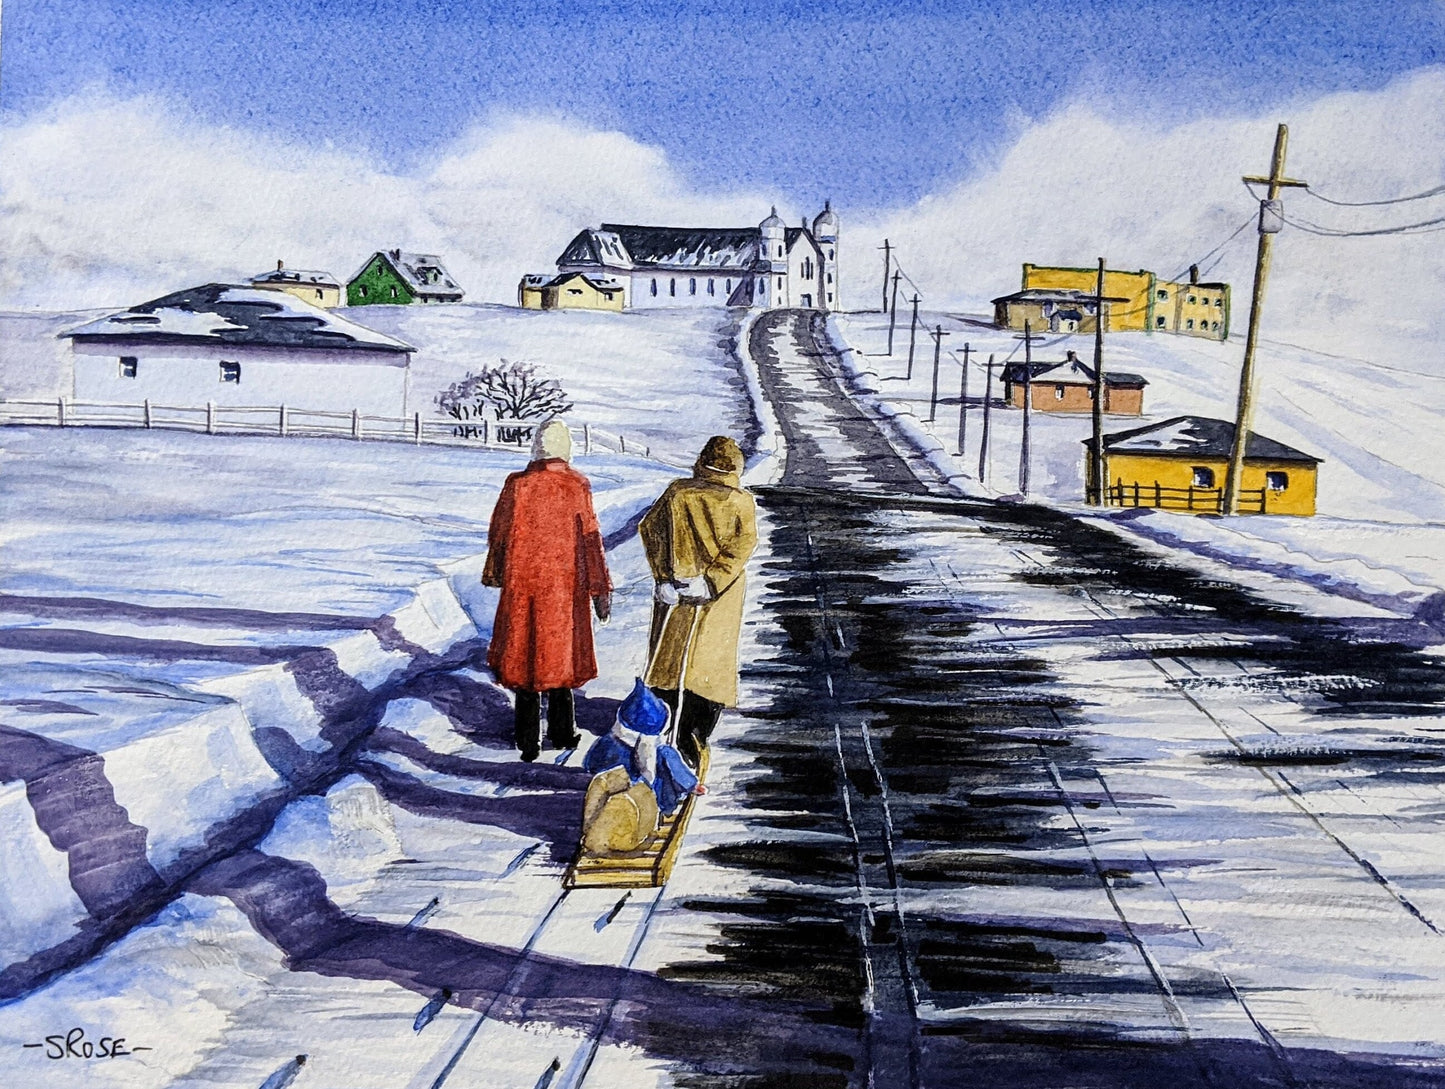 Winter Stroll, Bell Island, Newfoundland (11 x 14 inch print)